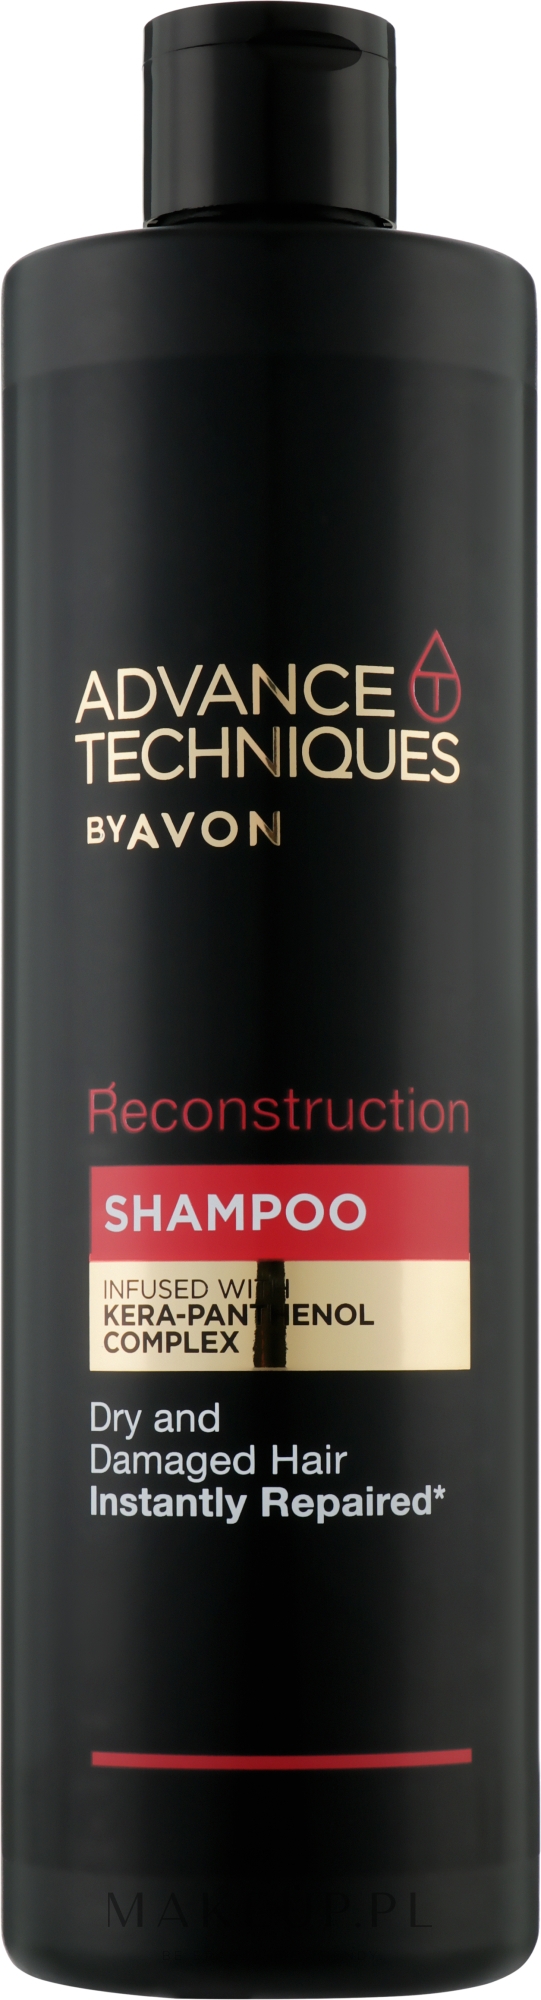 szampon advance techniques odbudowa wlosa opinie